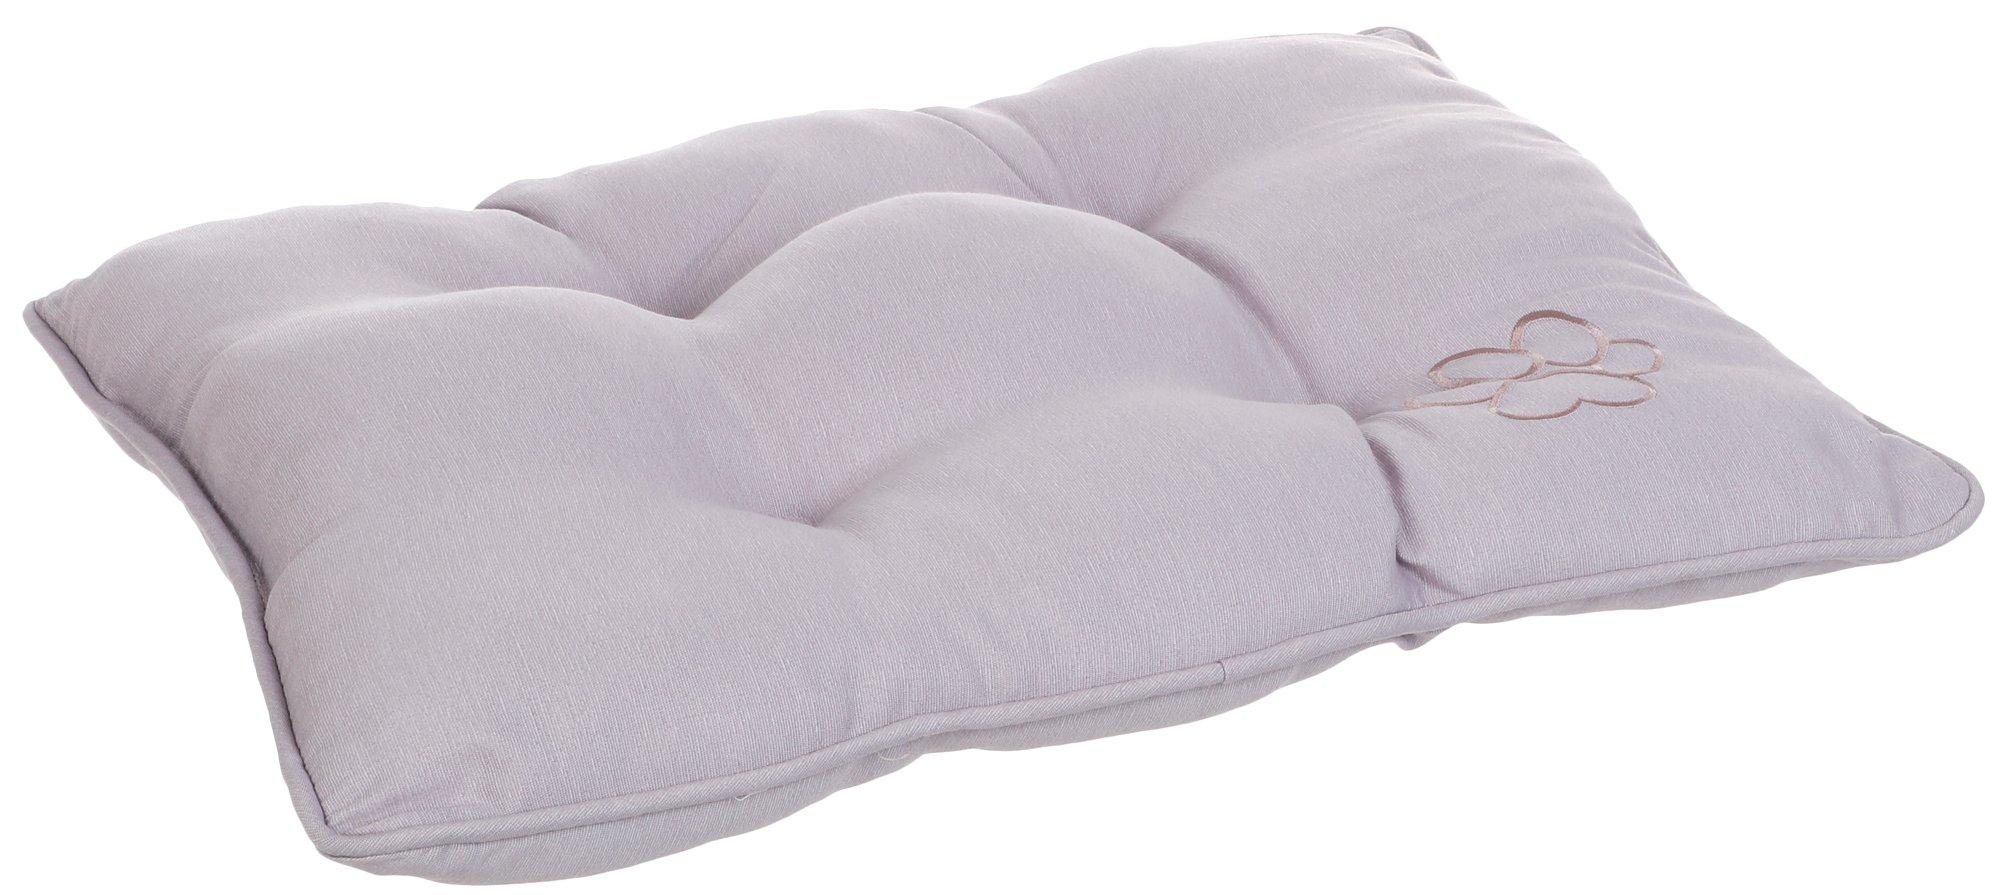 23x17 Pet Pillow Bed